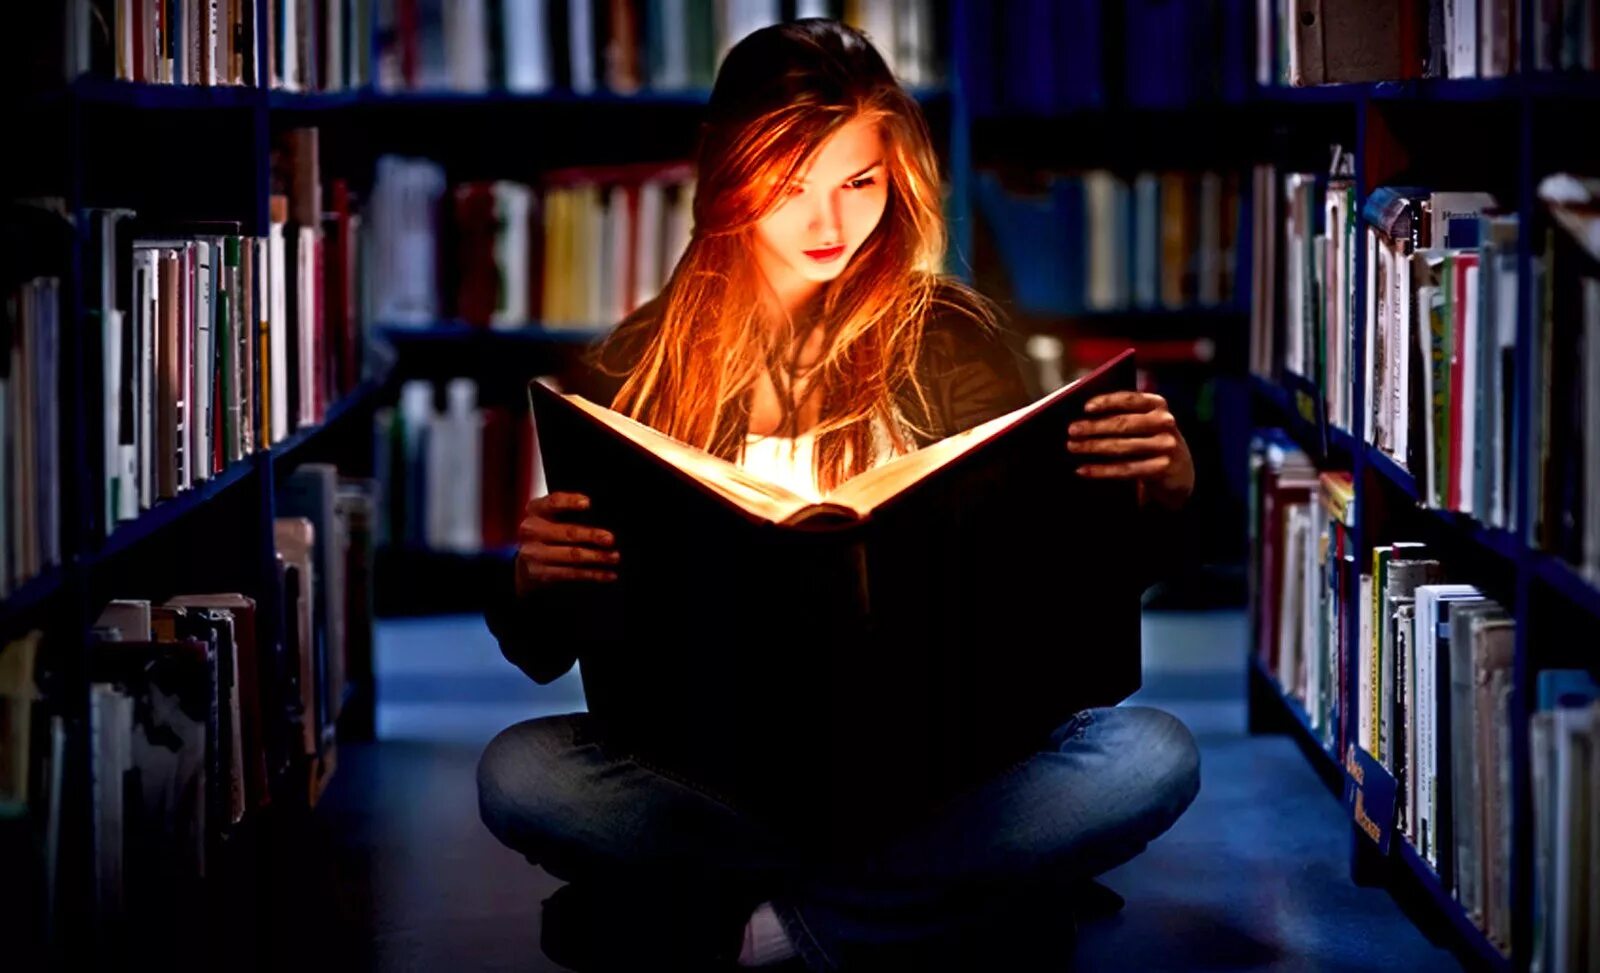 9 Августа день книголюбов. Чтение книг. Девушка с книгой. Фотосессия в библиотеке. Книжный человек читать